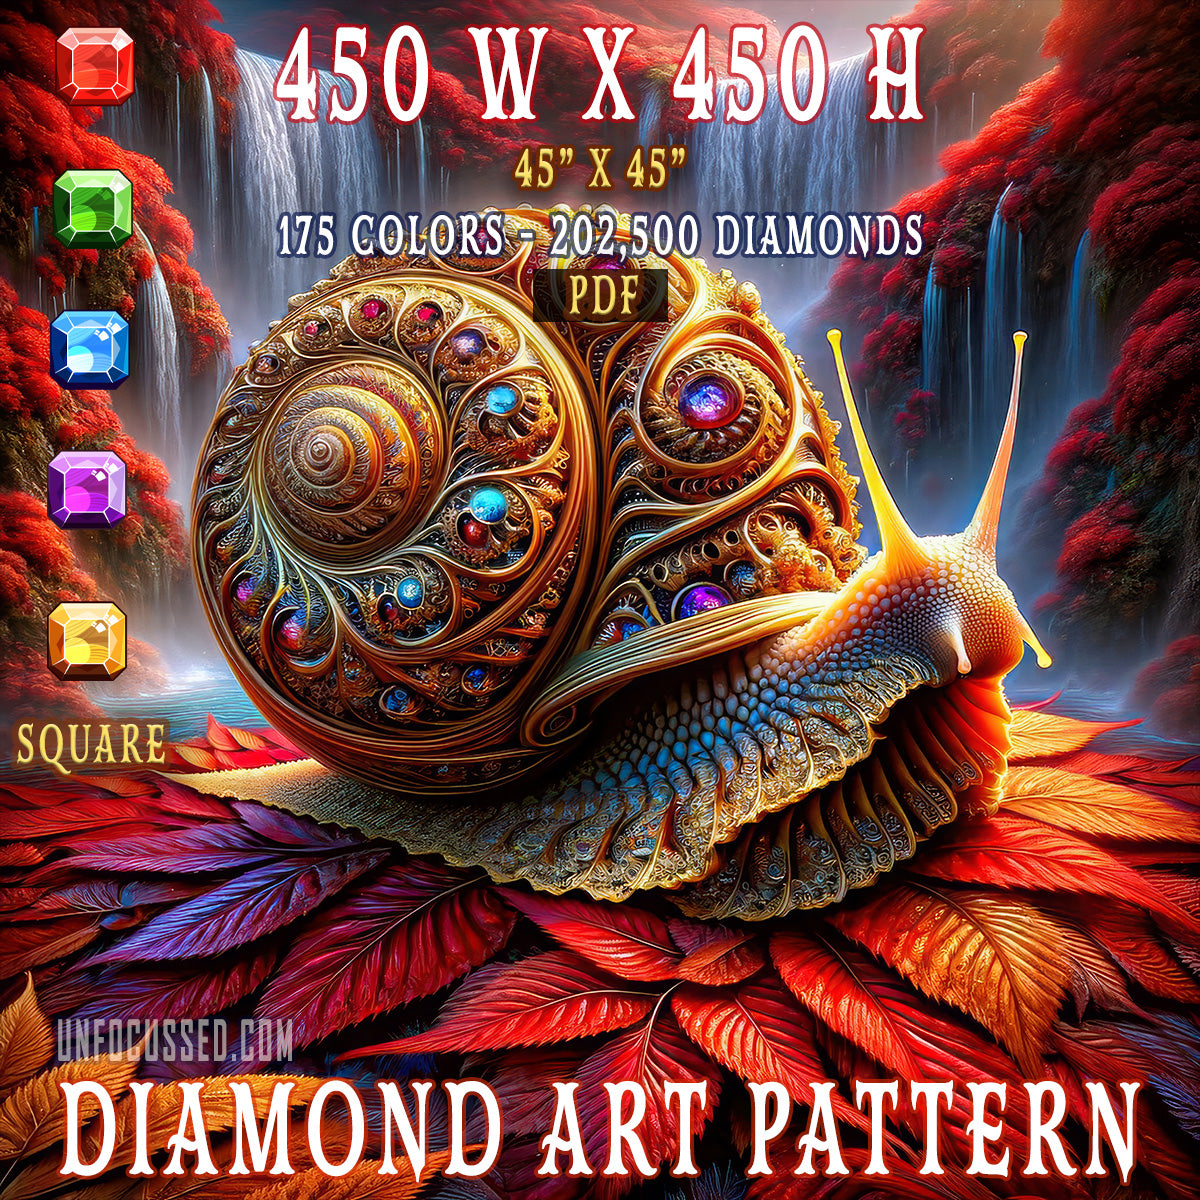 The Gilded Snail’s Odyssey Diamond Art Pattern